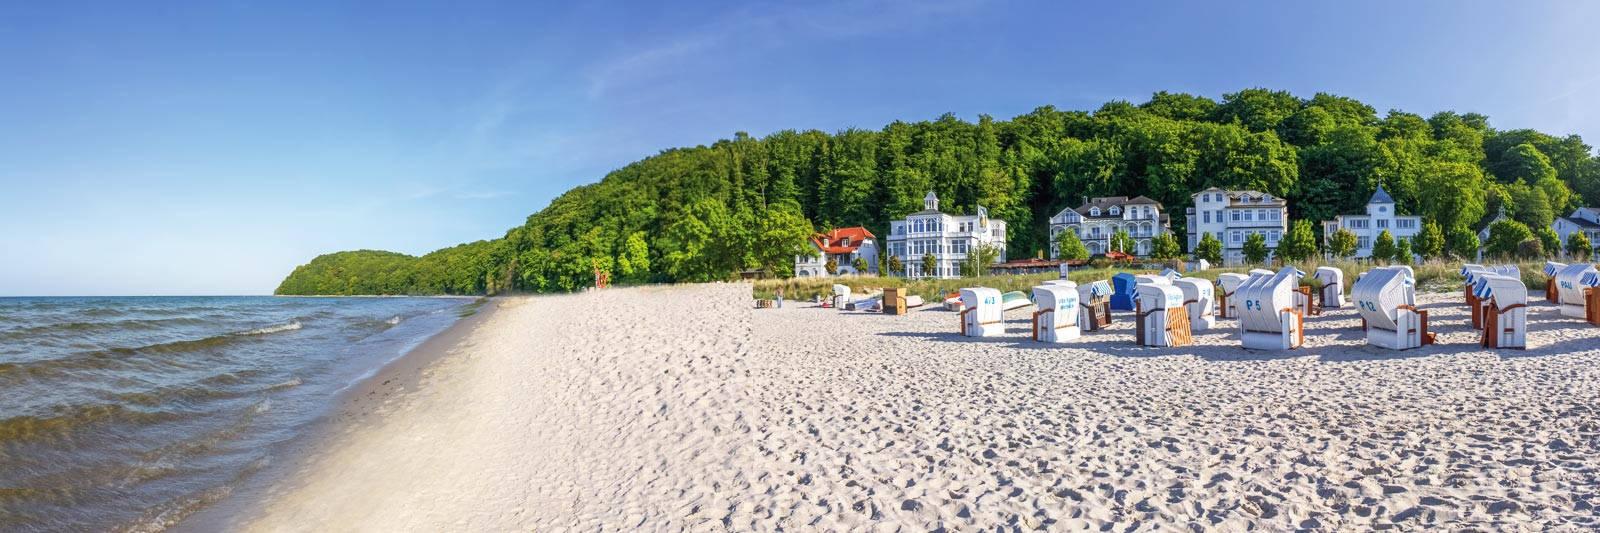 15 Ferienwohnungen und Ferienhäuser in Lauenburg - tourist-online.de